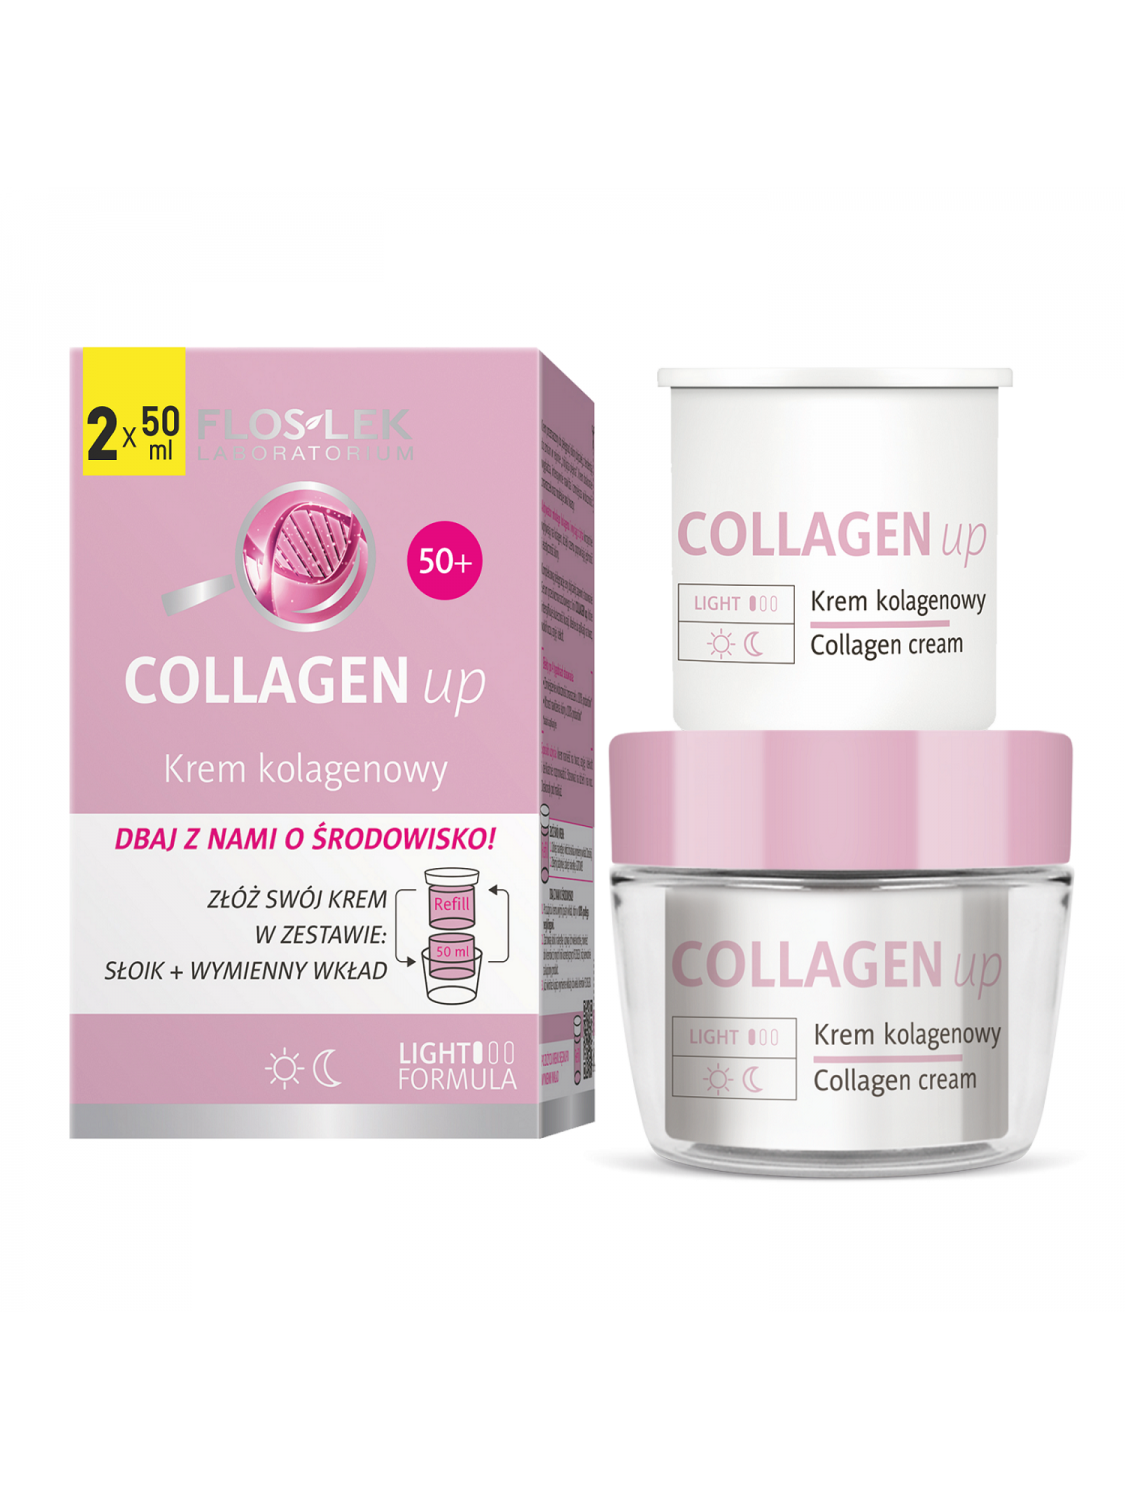 COLLAGEN up EKOpromotion - Collagen cream jar 50 ml + refil 50 ml - FLOSLEK